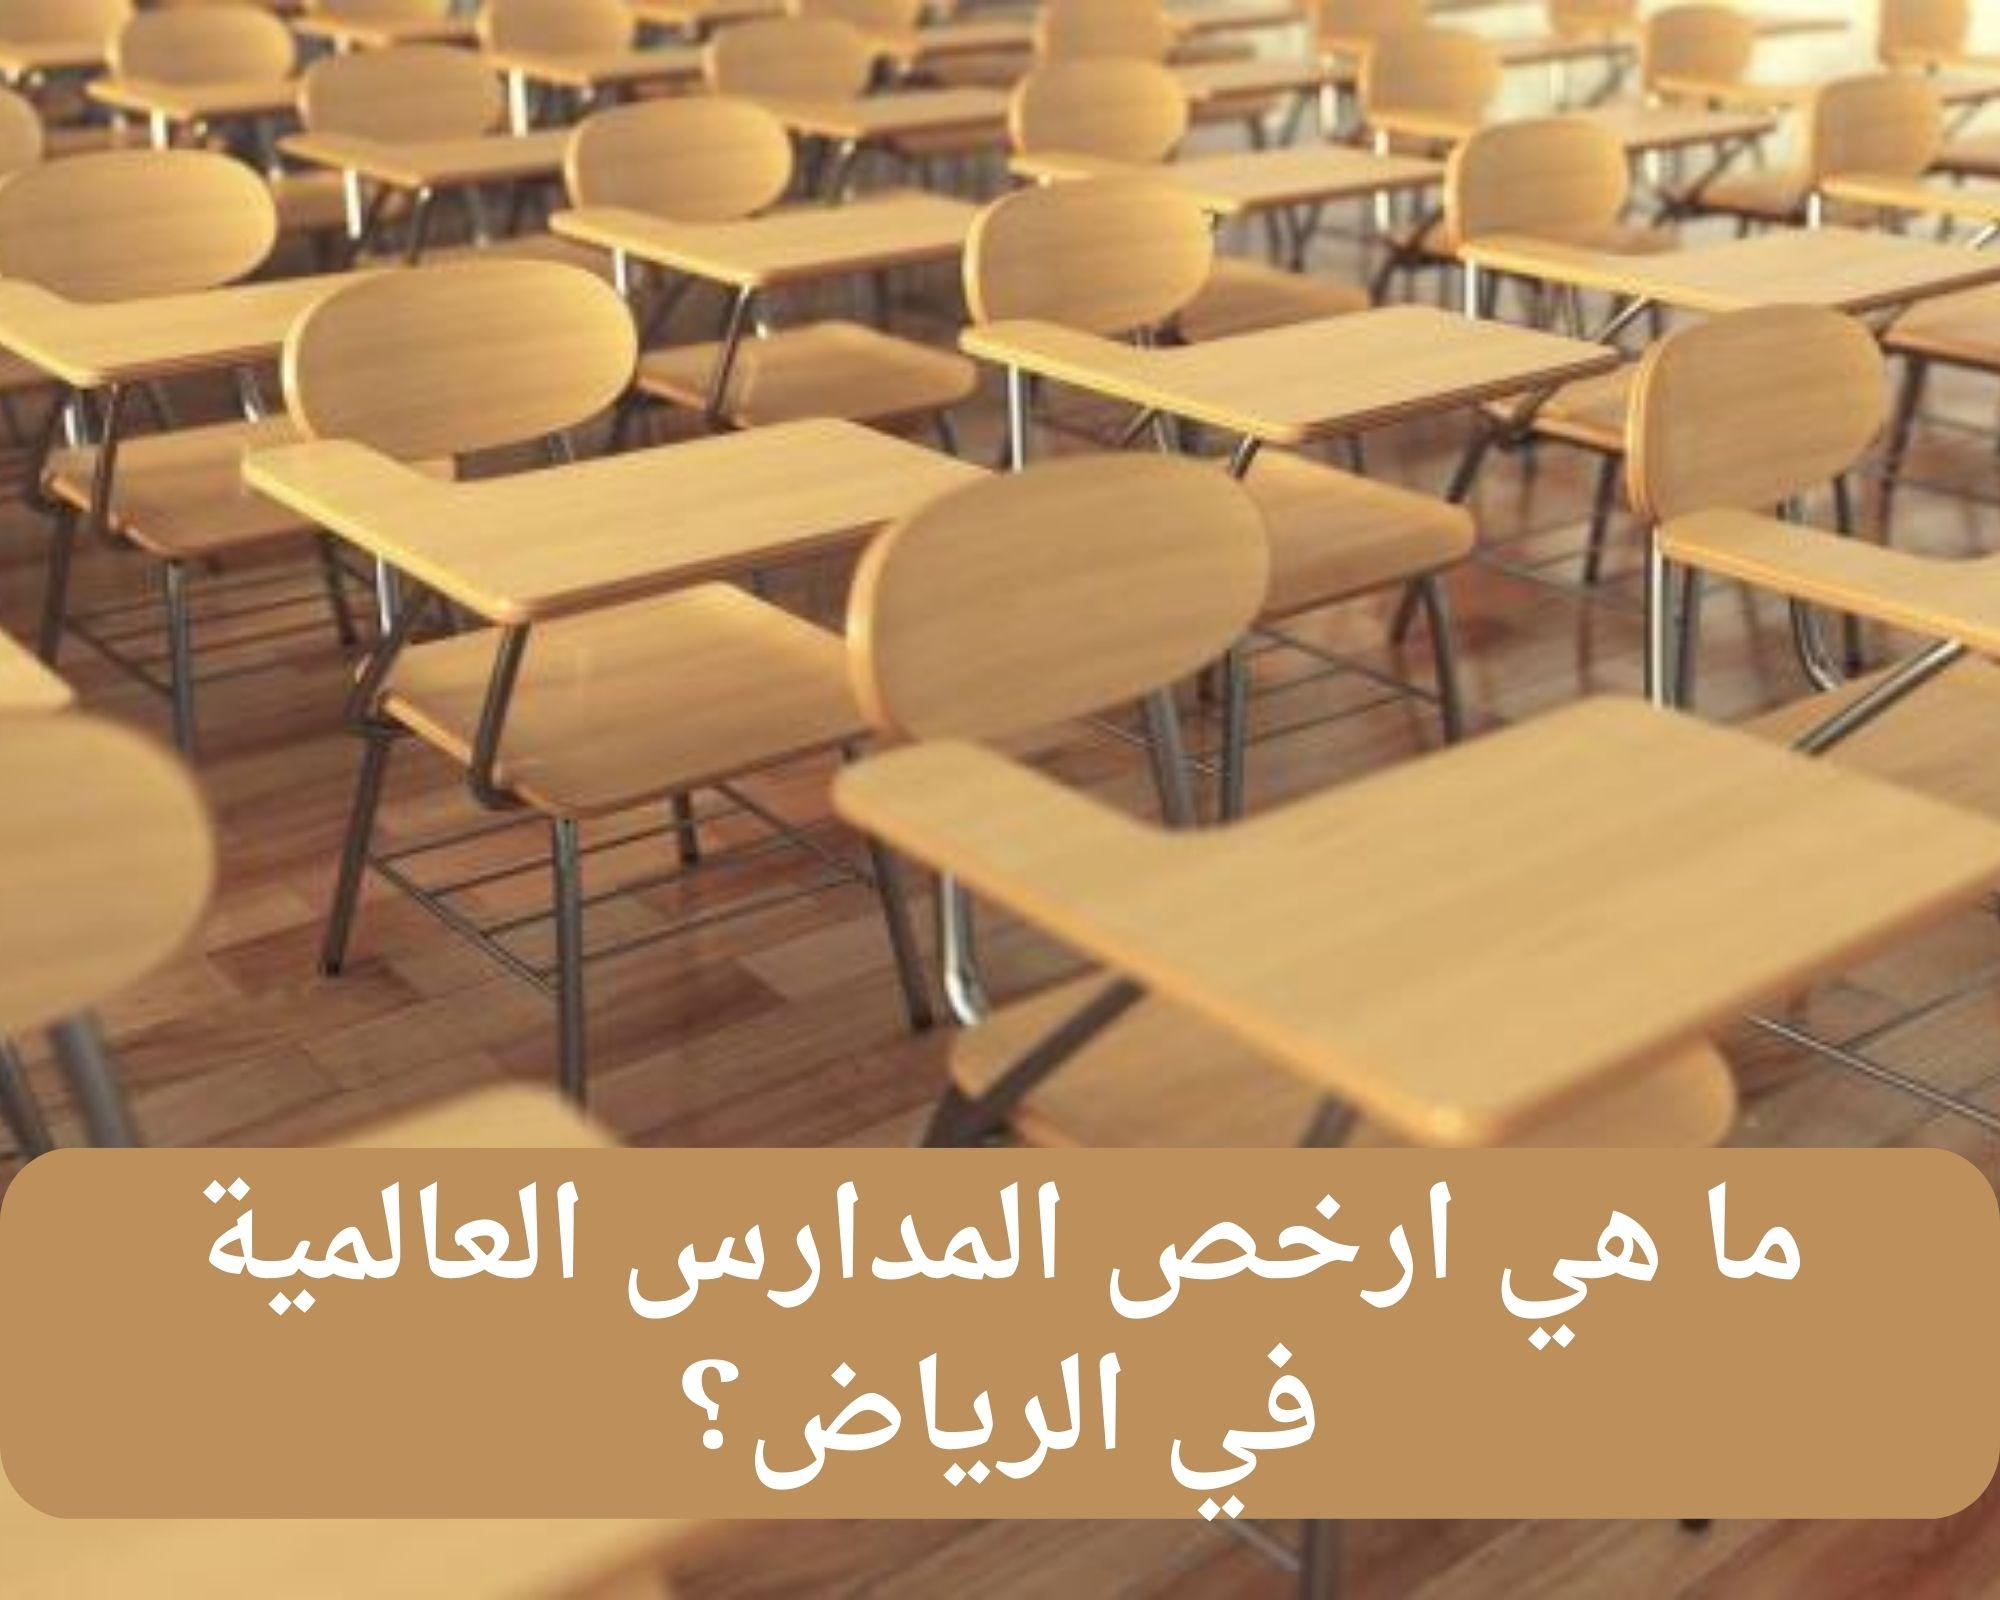 ما هي ارخص المدارس العالمية في الرياض؟